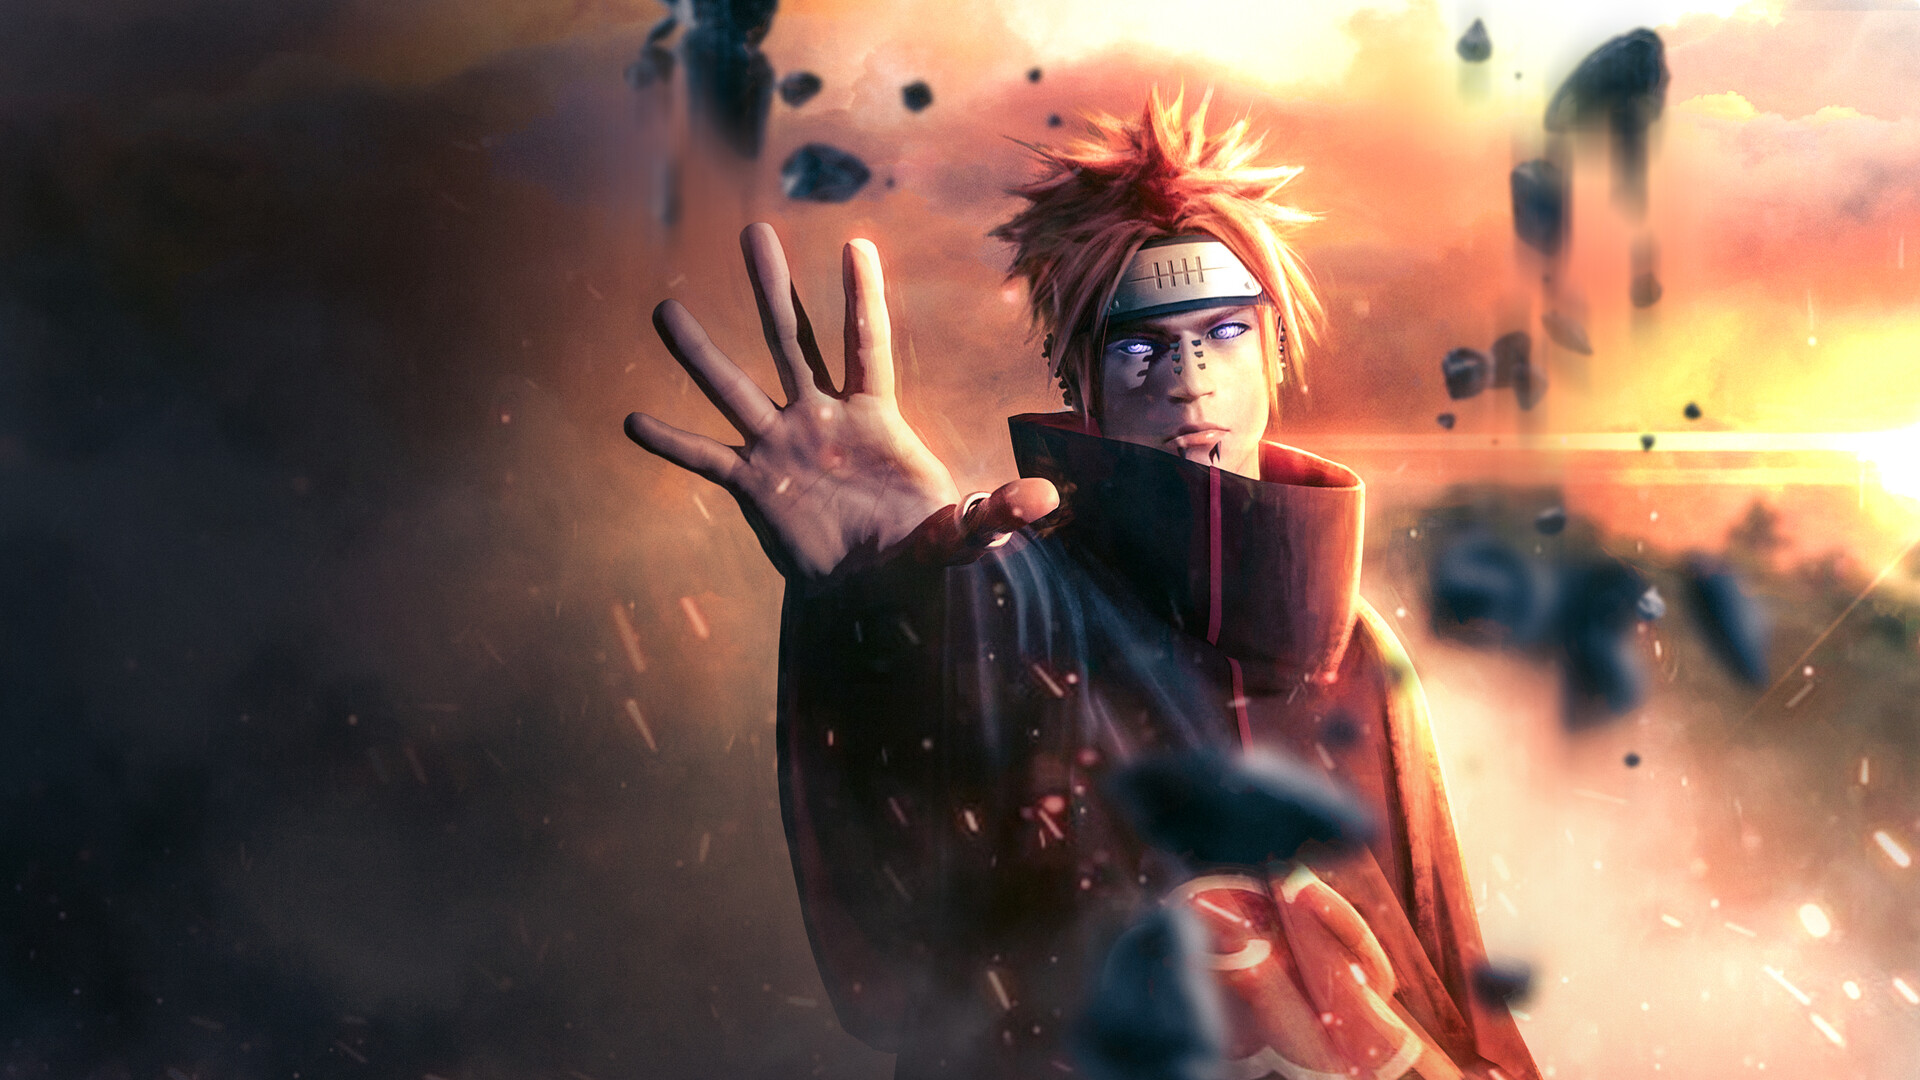 Naruto Pain digital wallpaper #Anime #Naruto Pain (Naruto) #1080P  #wallpaper #hdwallpaper #desktop